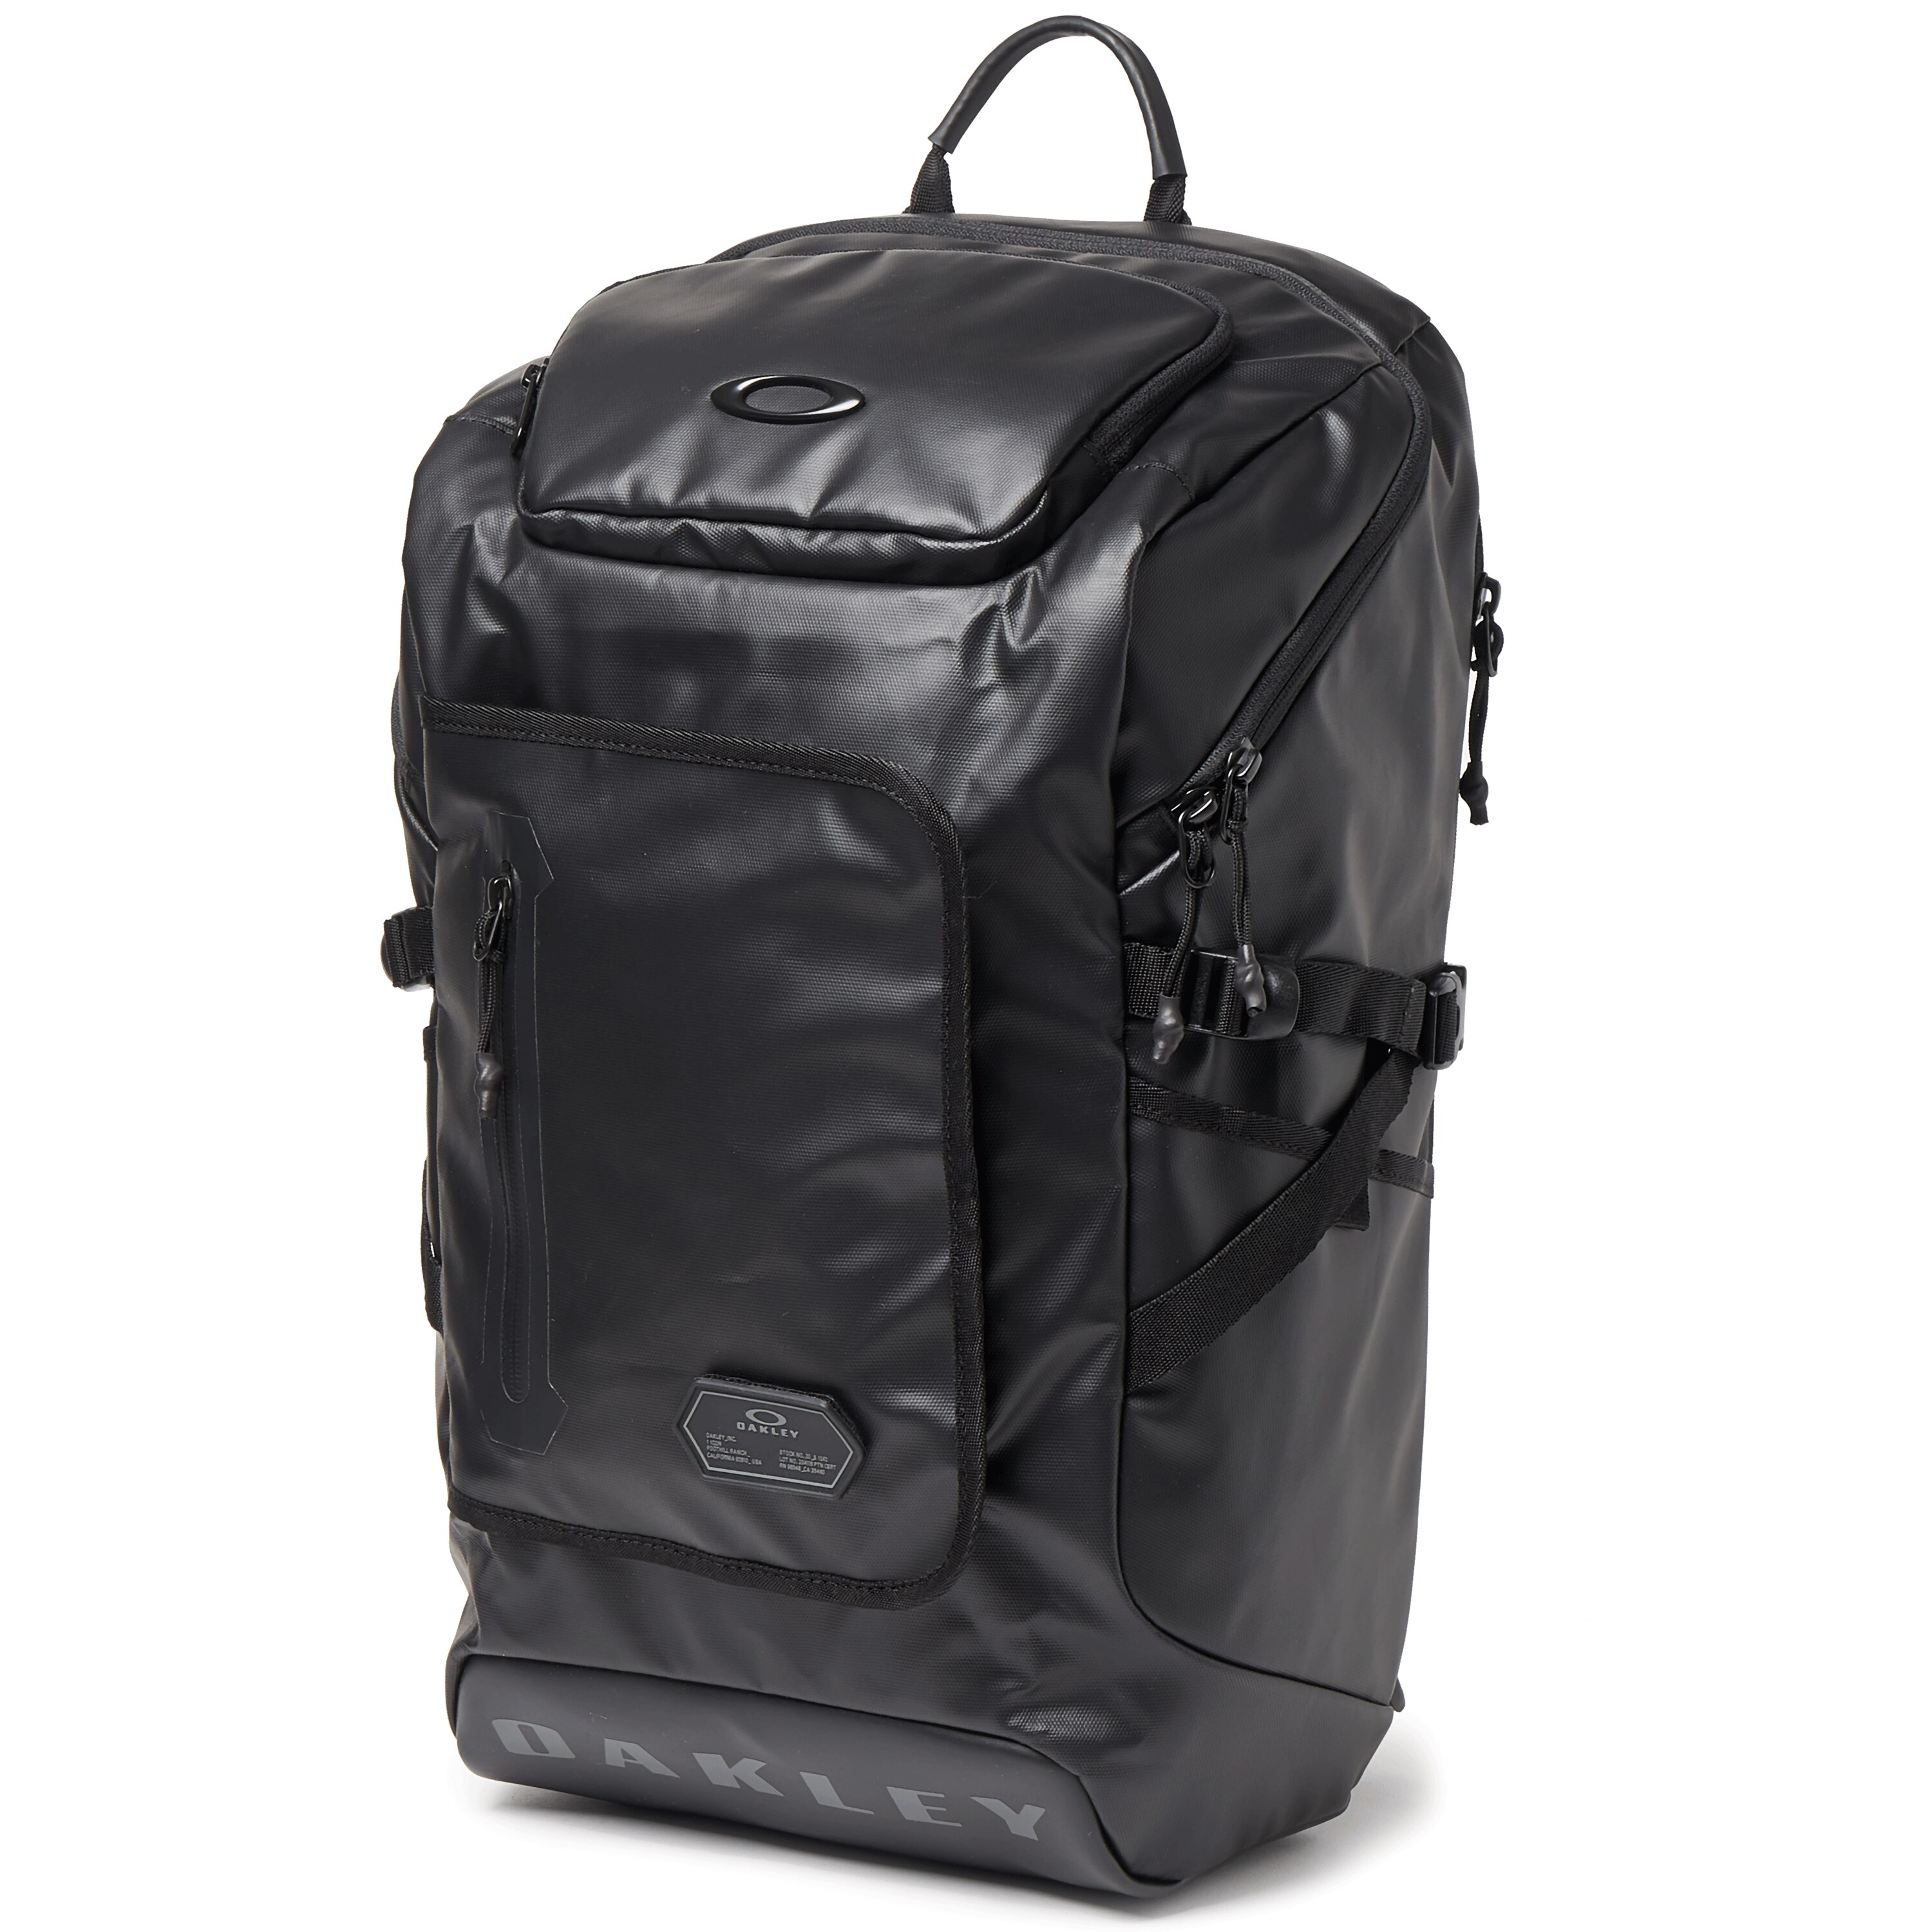 Oakley Training Backpack 1 - Blackout - 921429-02E | Oakley OSI Store ...